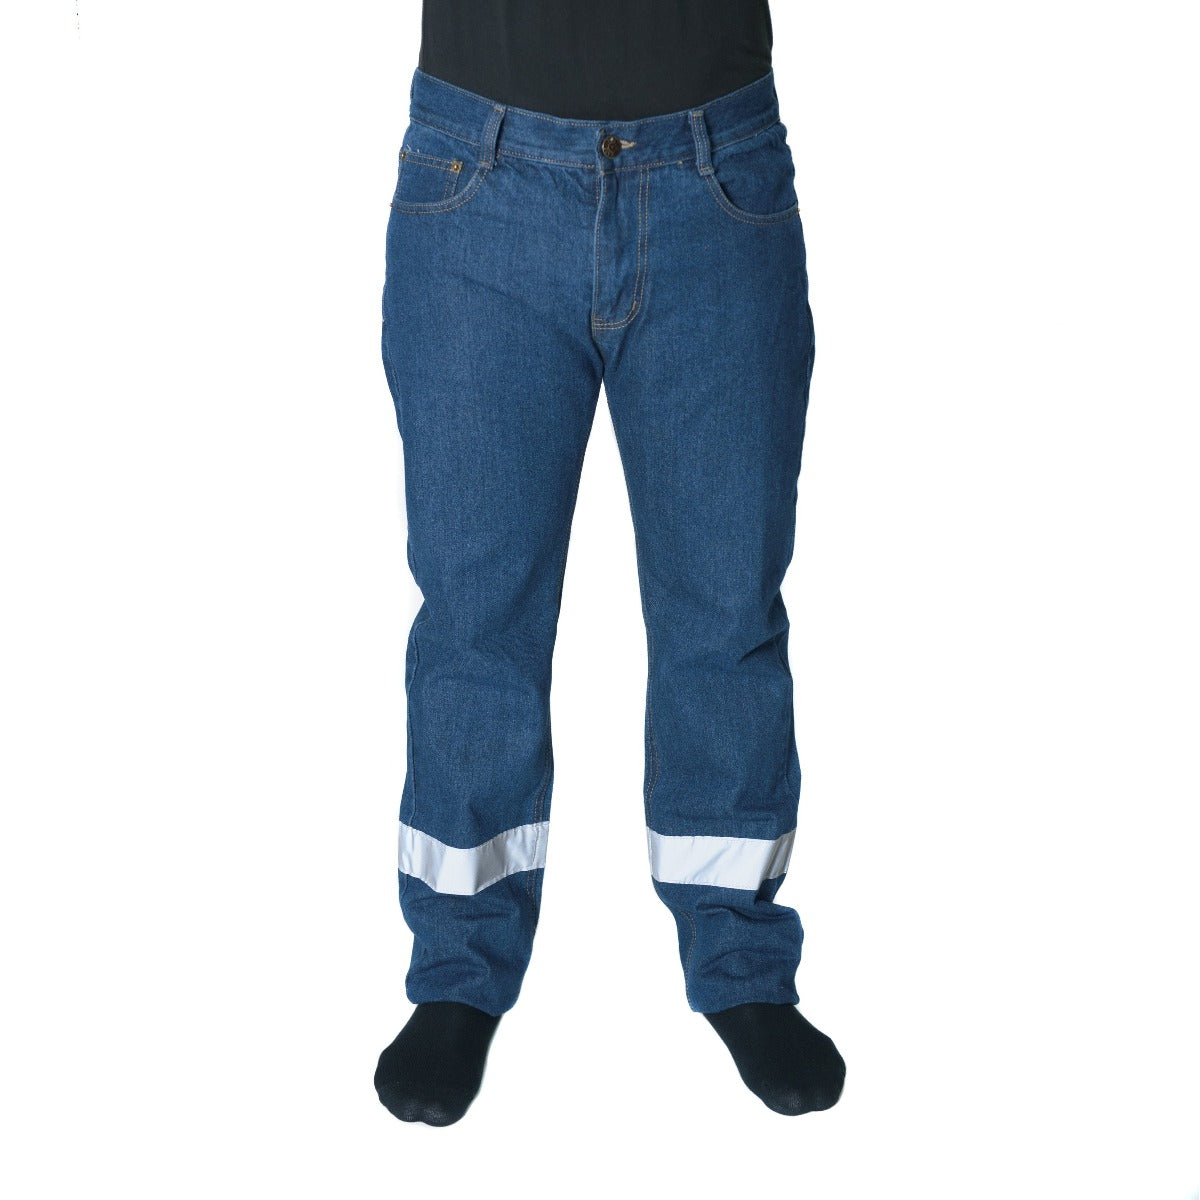 Pantalón de trabajo azul con reflectivo – Unishop – Tienda de